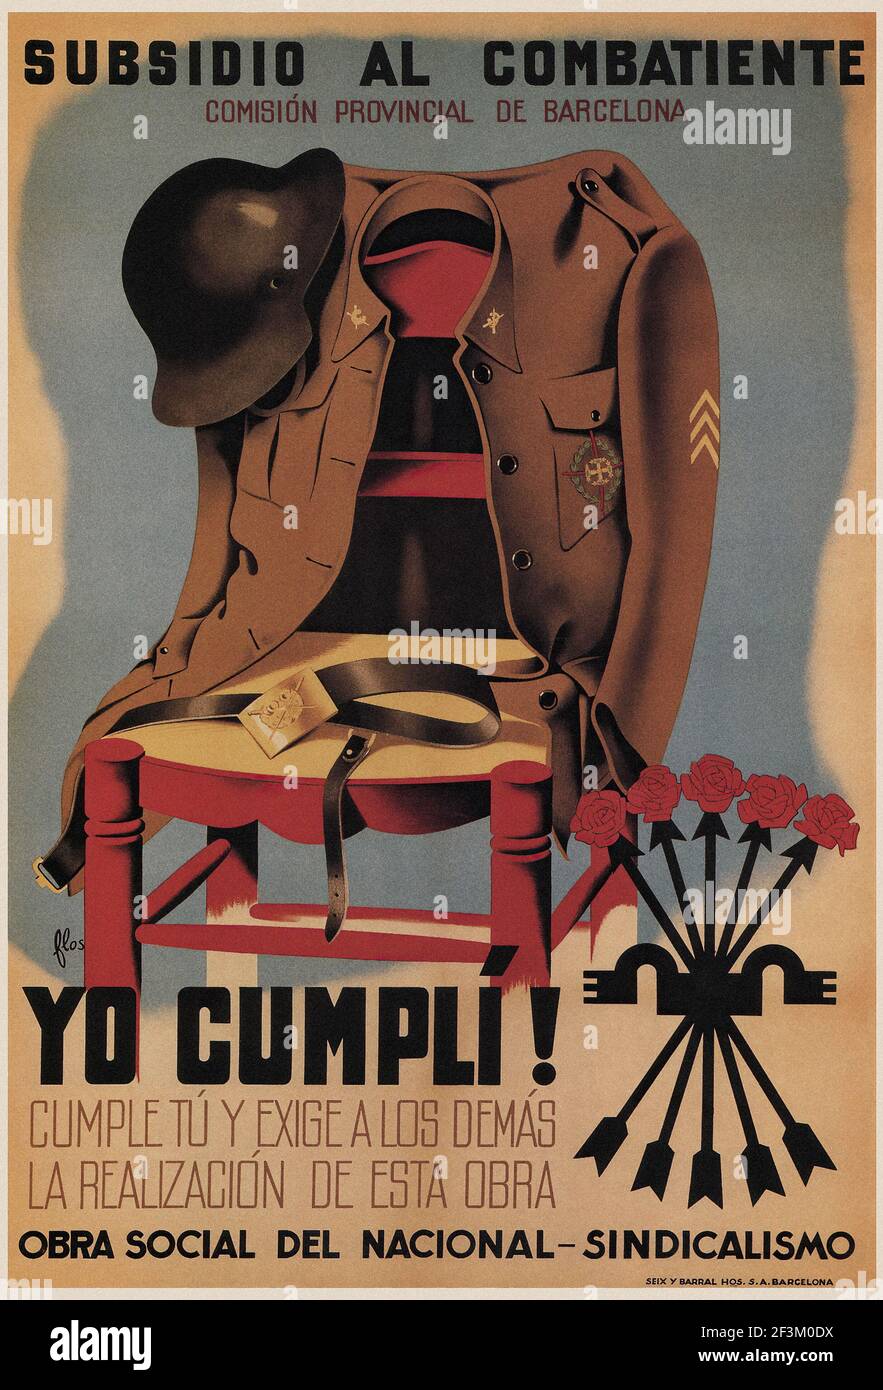 Affiche de propagande espagnole de la guerre de Sécession. .subvention du combattant. Commission provinciale de Barcelone. 1939 Banque D'Images